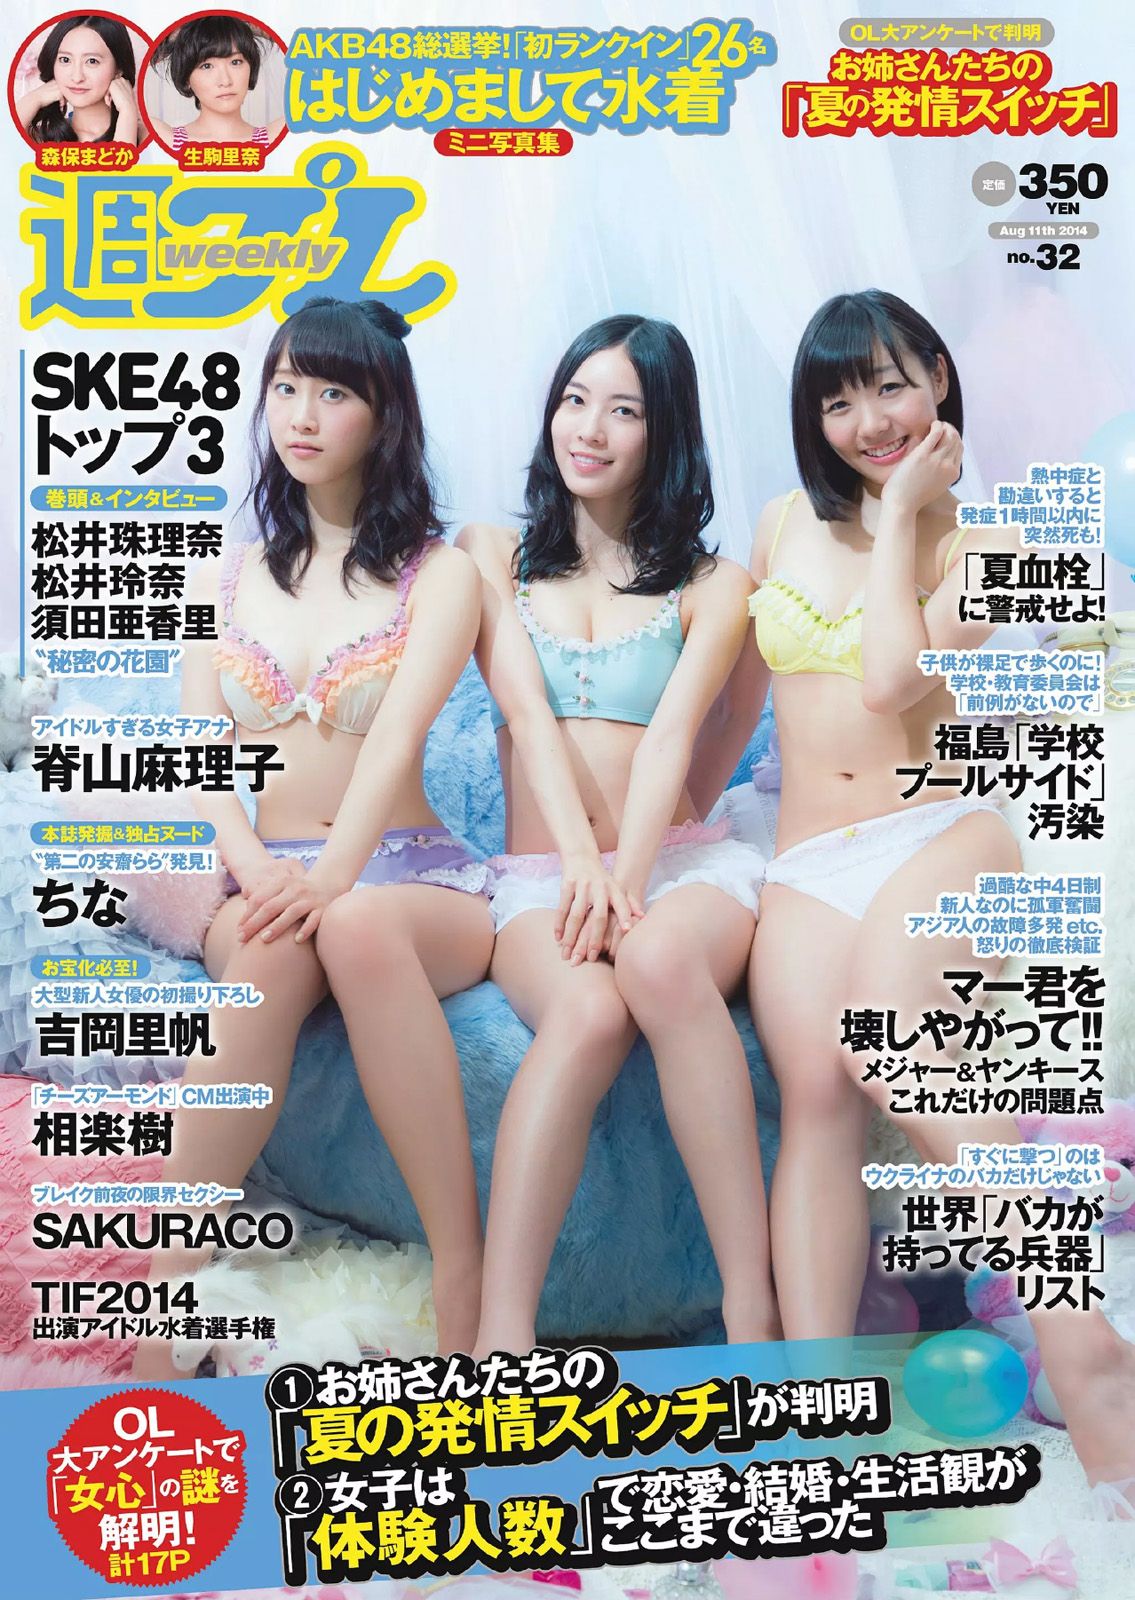 [Weekly Playboy] 2014 No.32 SKE48 相楽樹 吉岡里帆 脊山麻理子 SAKURACO drop 橘花凛0